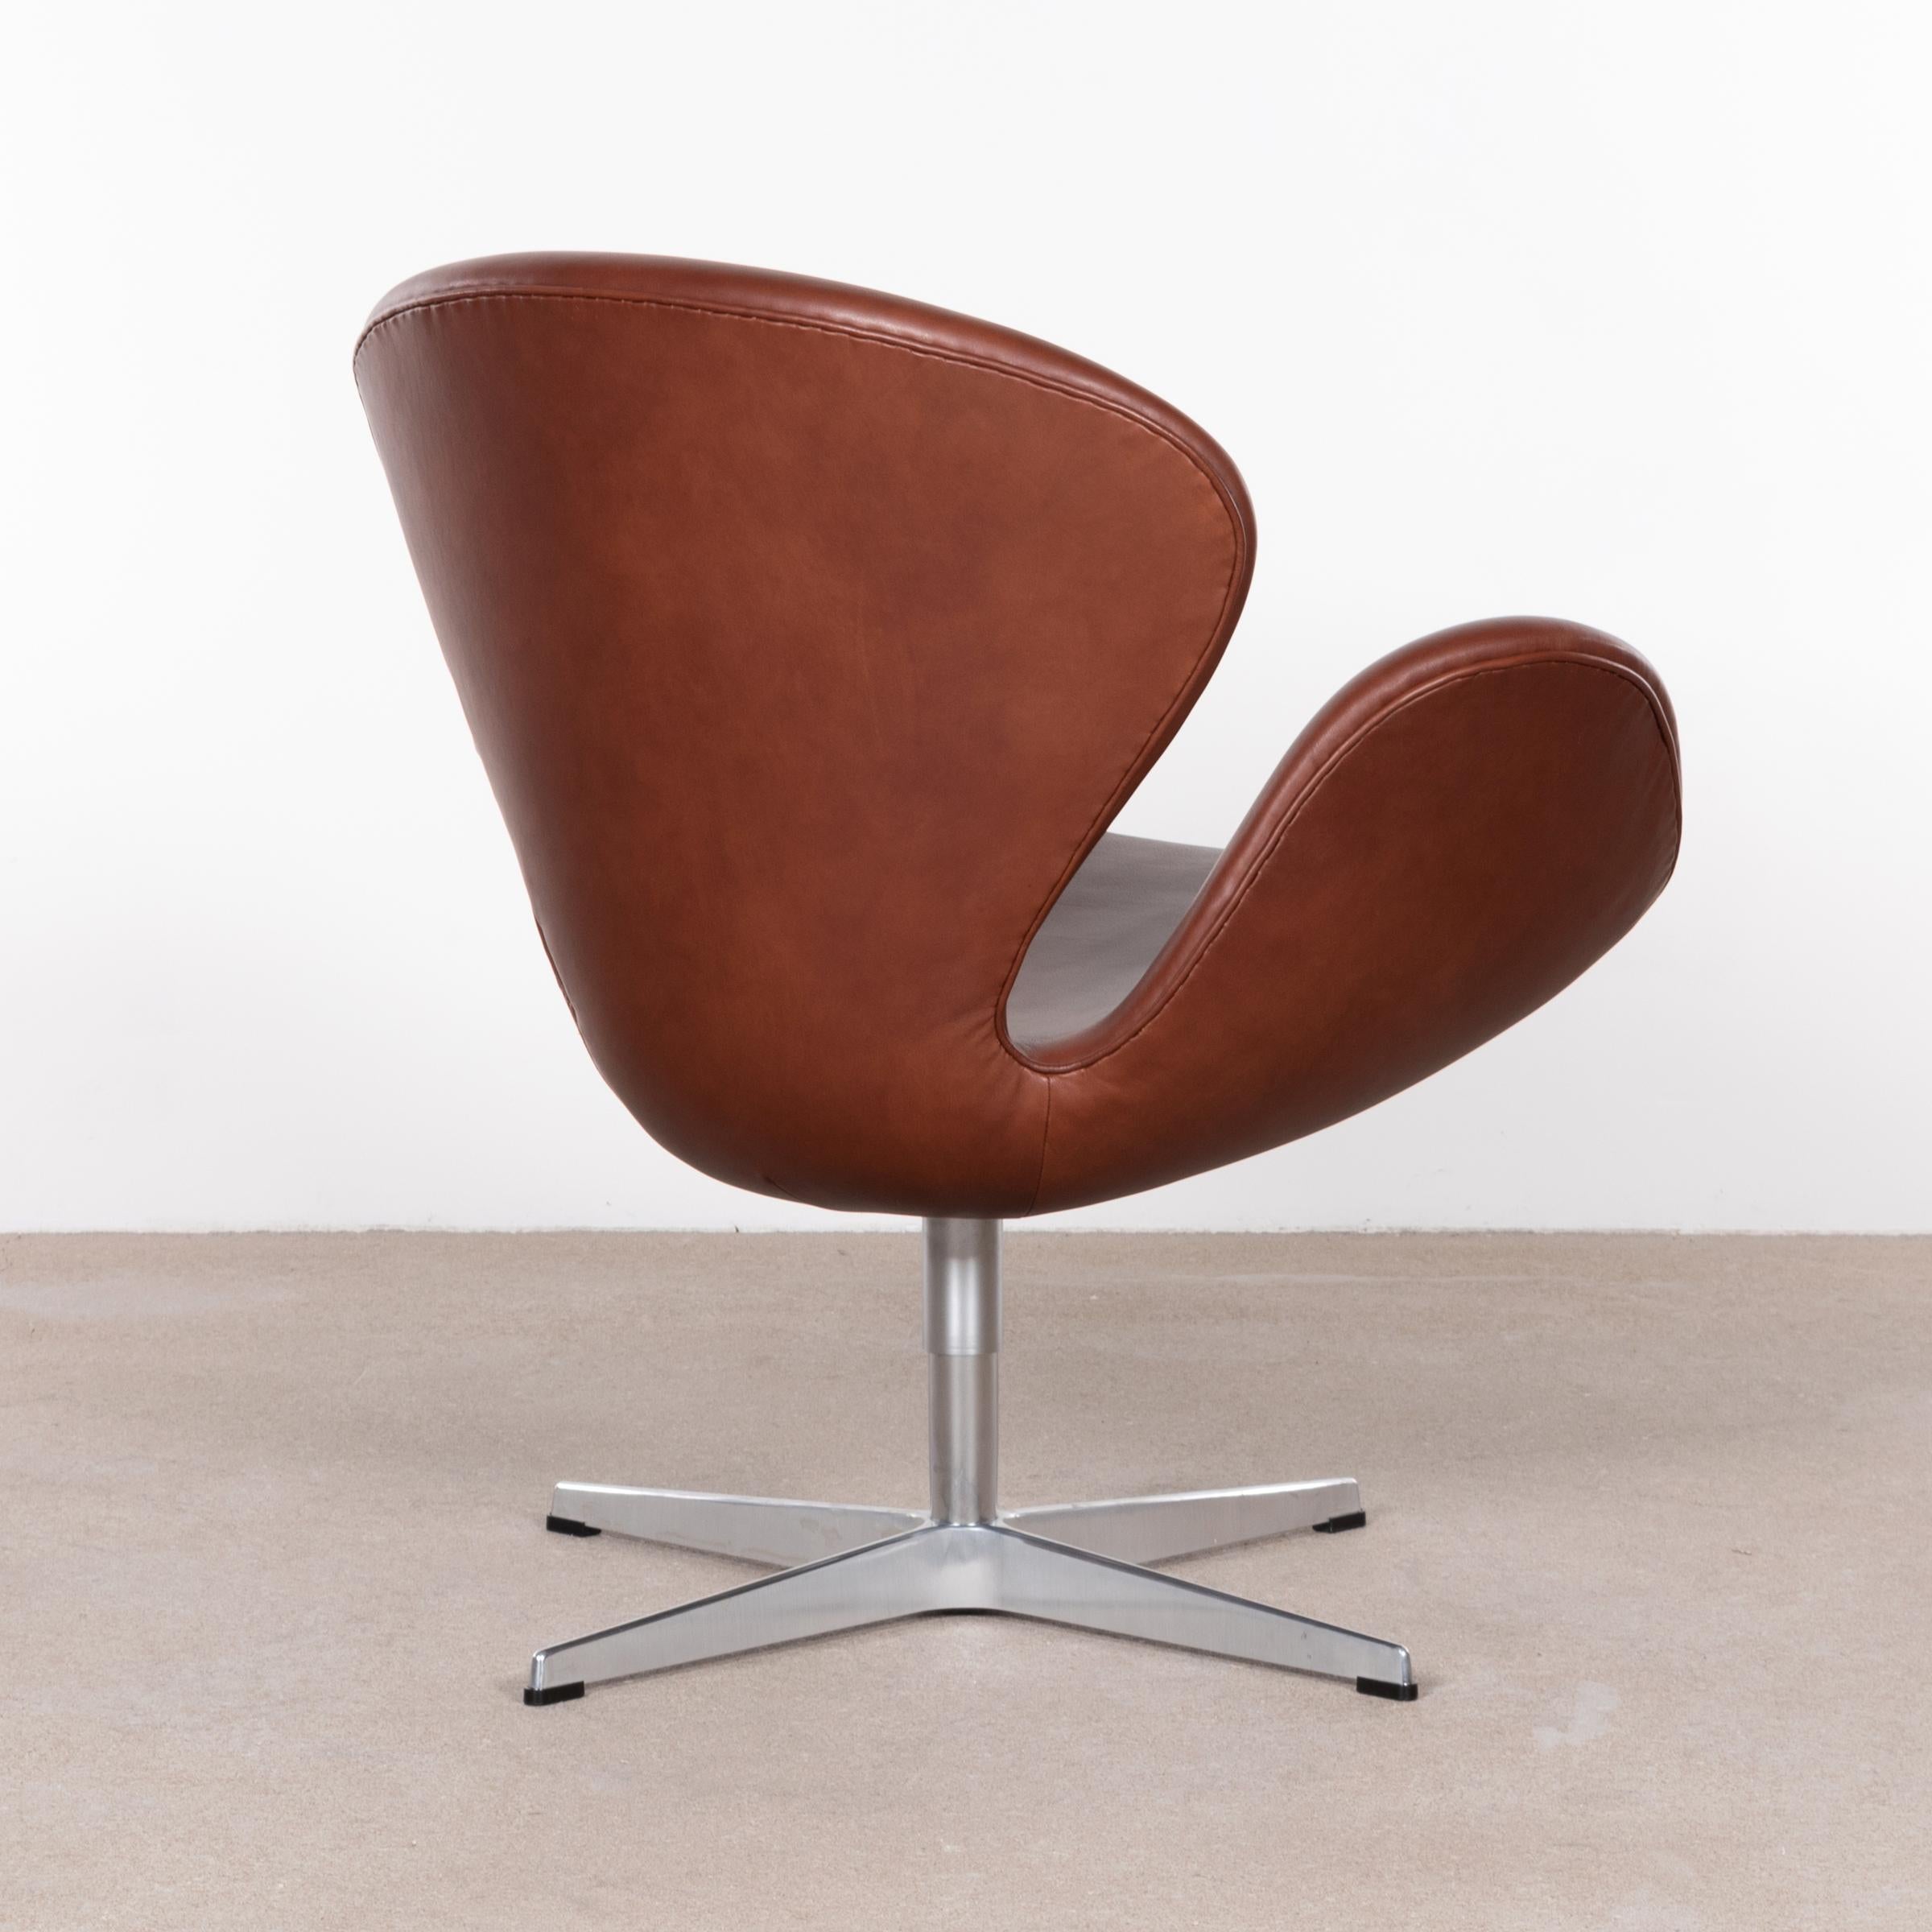 Danish Arne Jacobsen Swan Chair 'Model 3320' in Brown Leather for Fritz Hansen Denmark